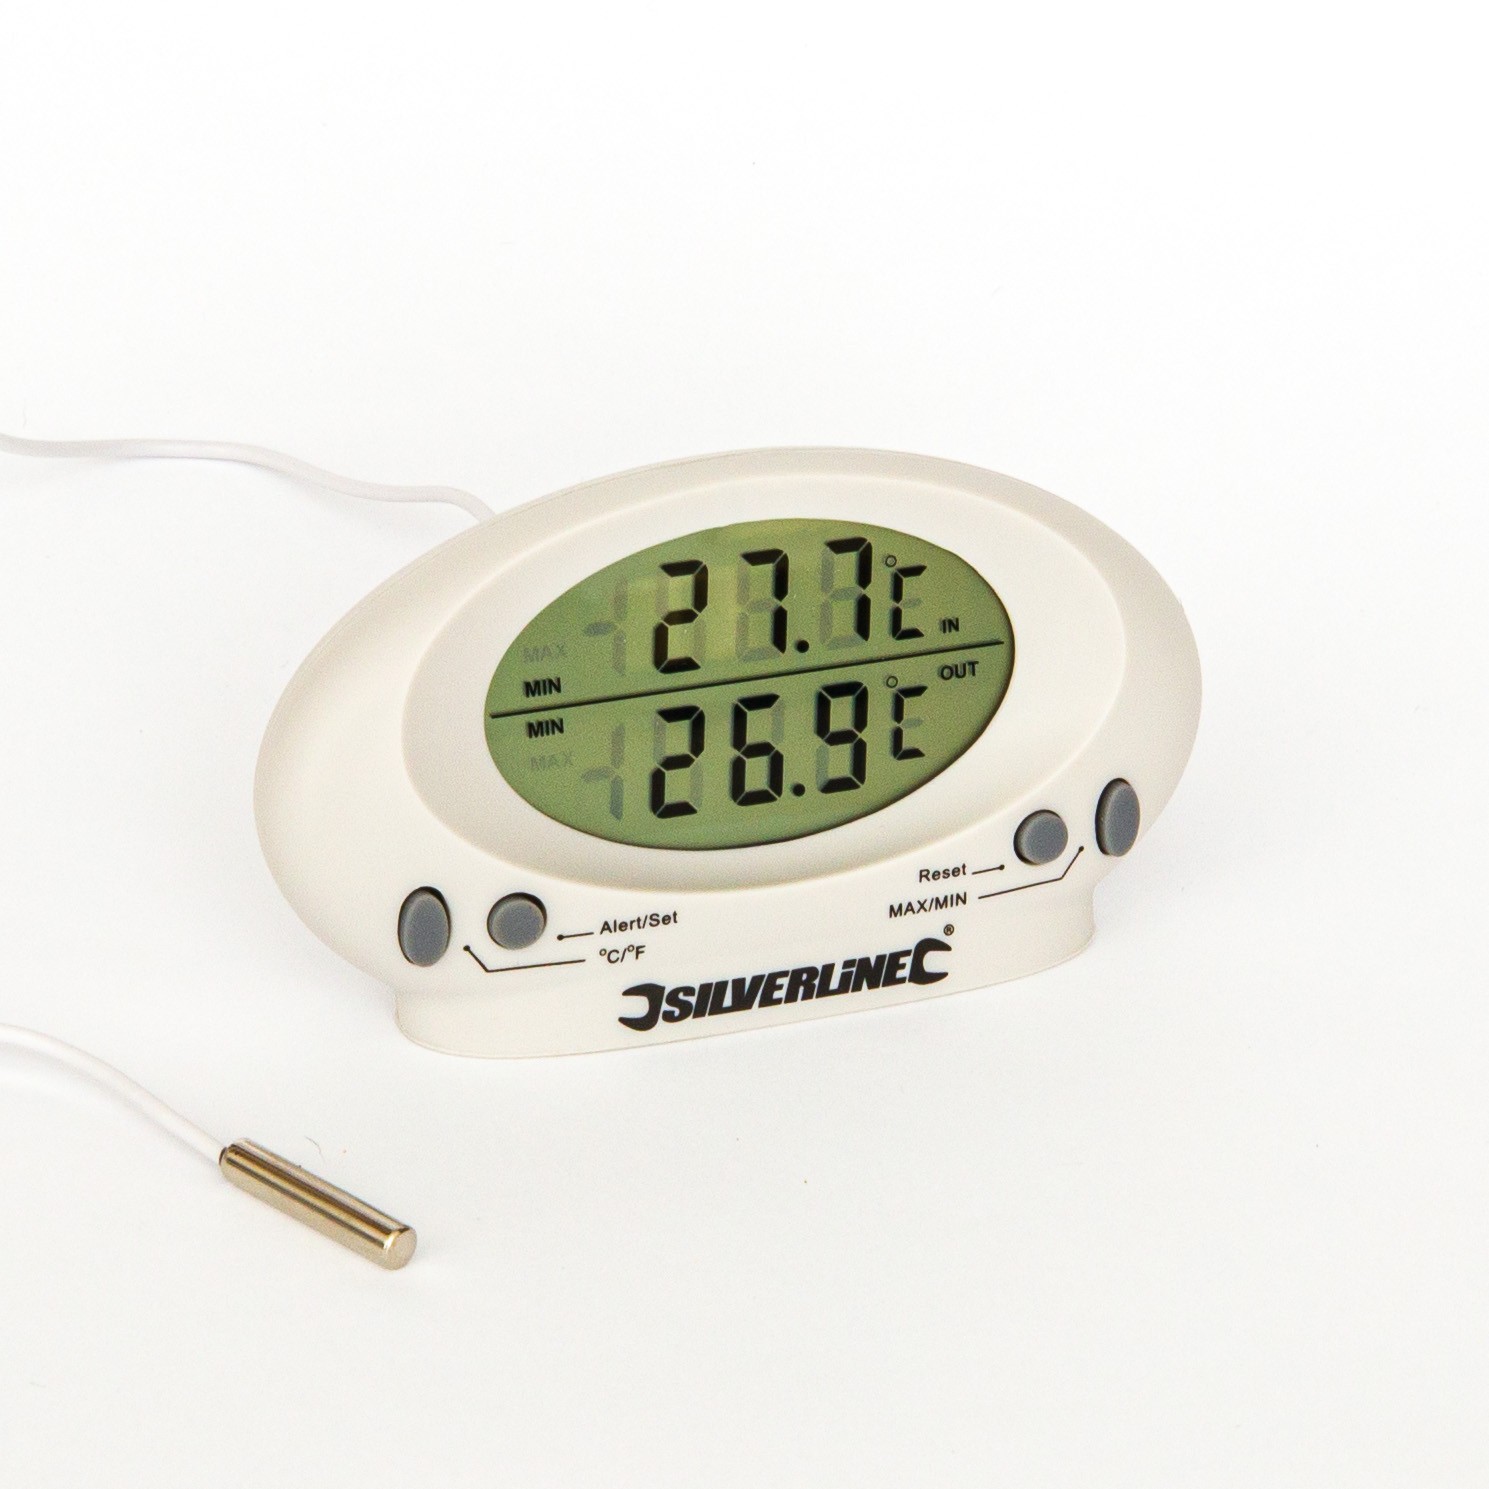 Termometro digitale da interno ed esterno con orologio e display